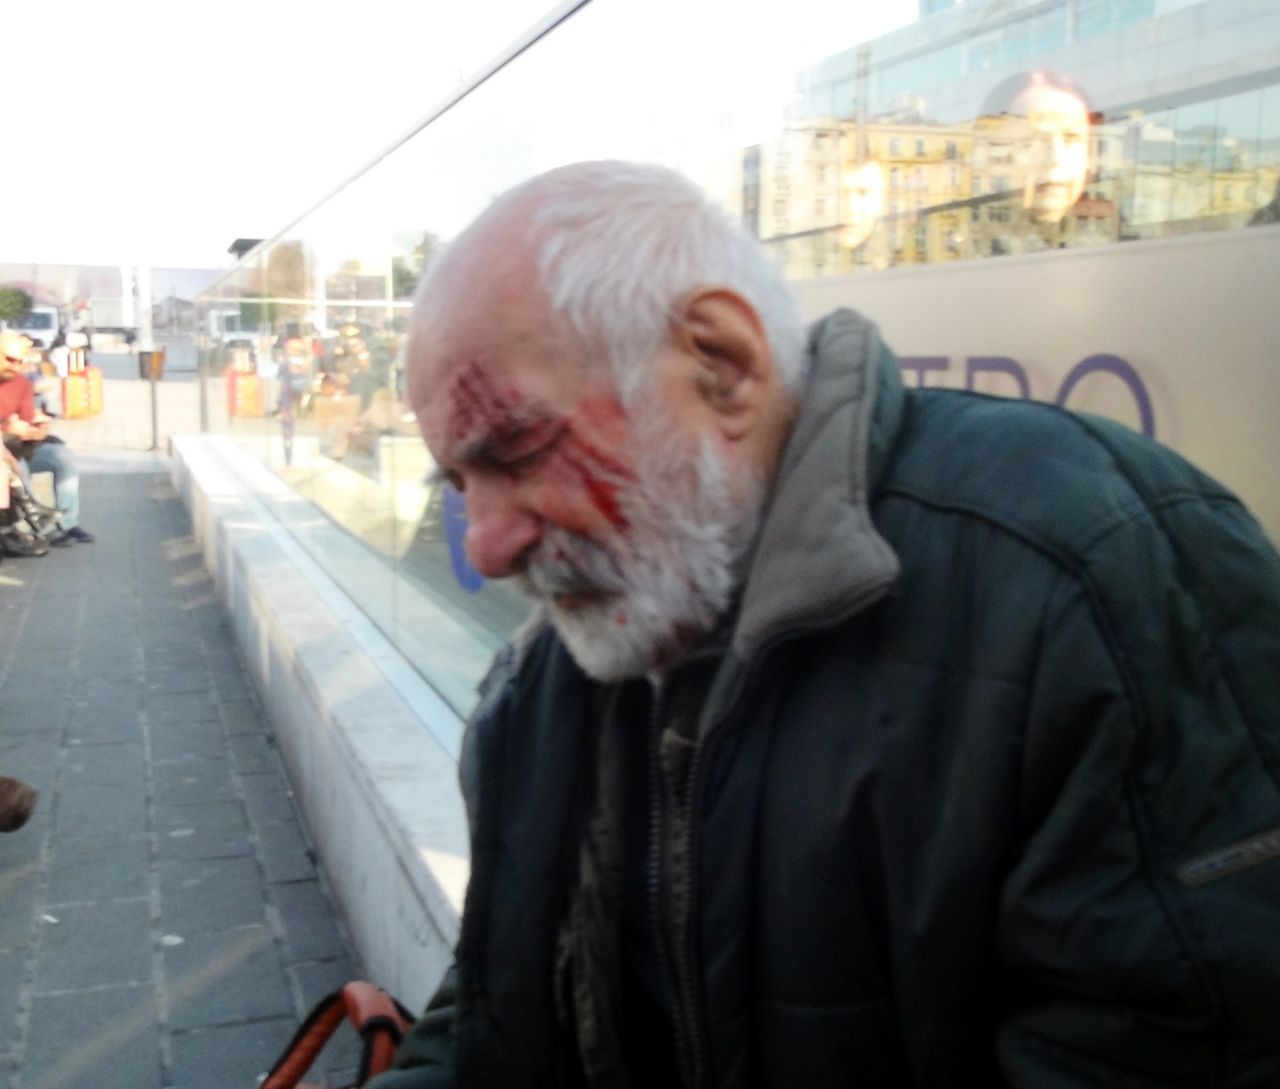 Oyuncu Hikmet Karagöz Taksim Metrosunda merdivenlerden düştü kanlar içinde kaldı